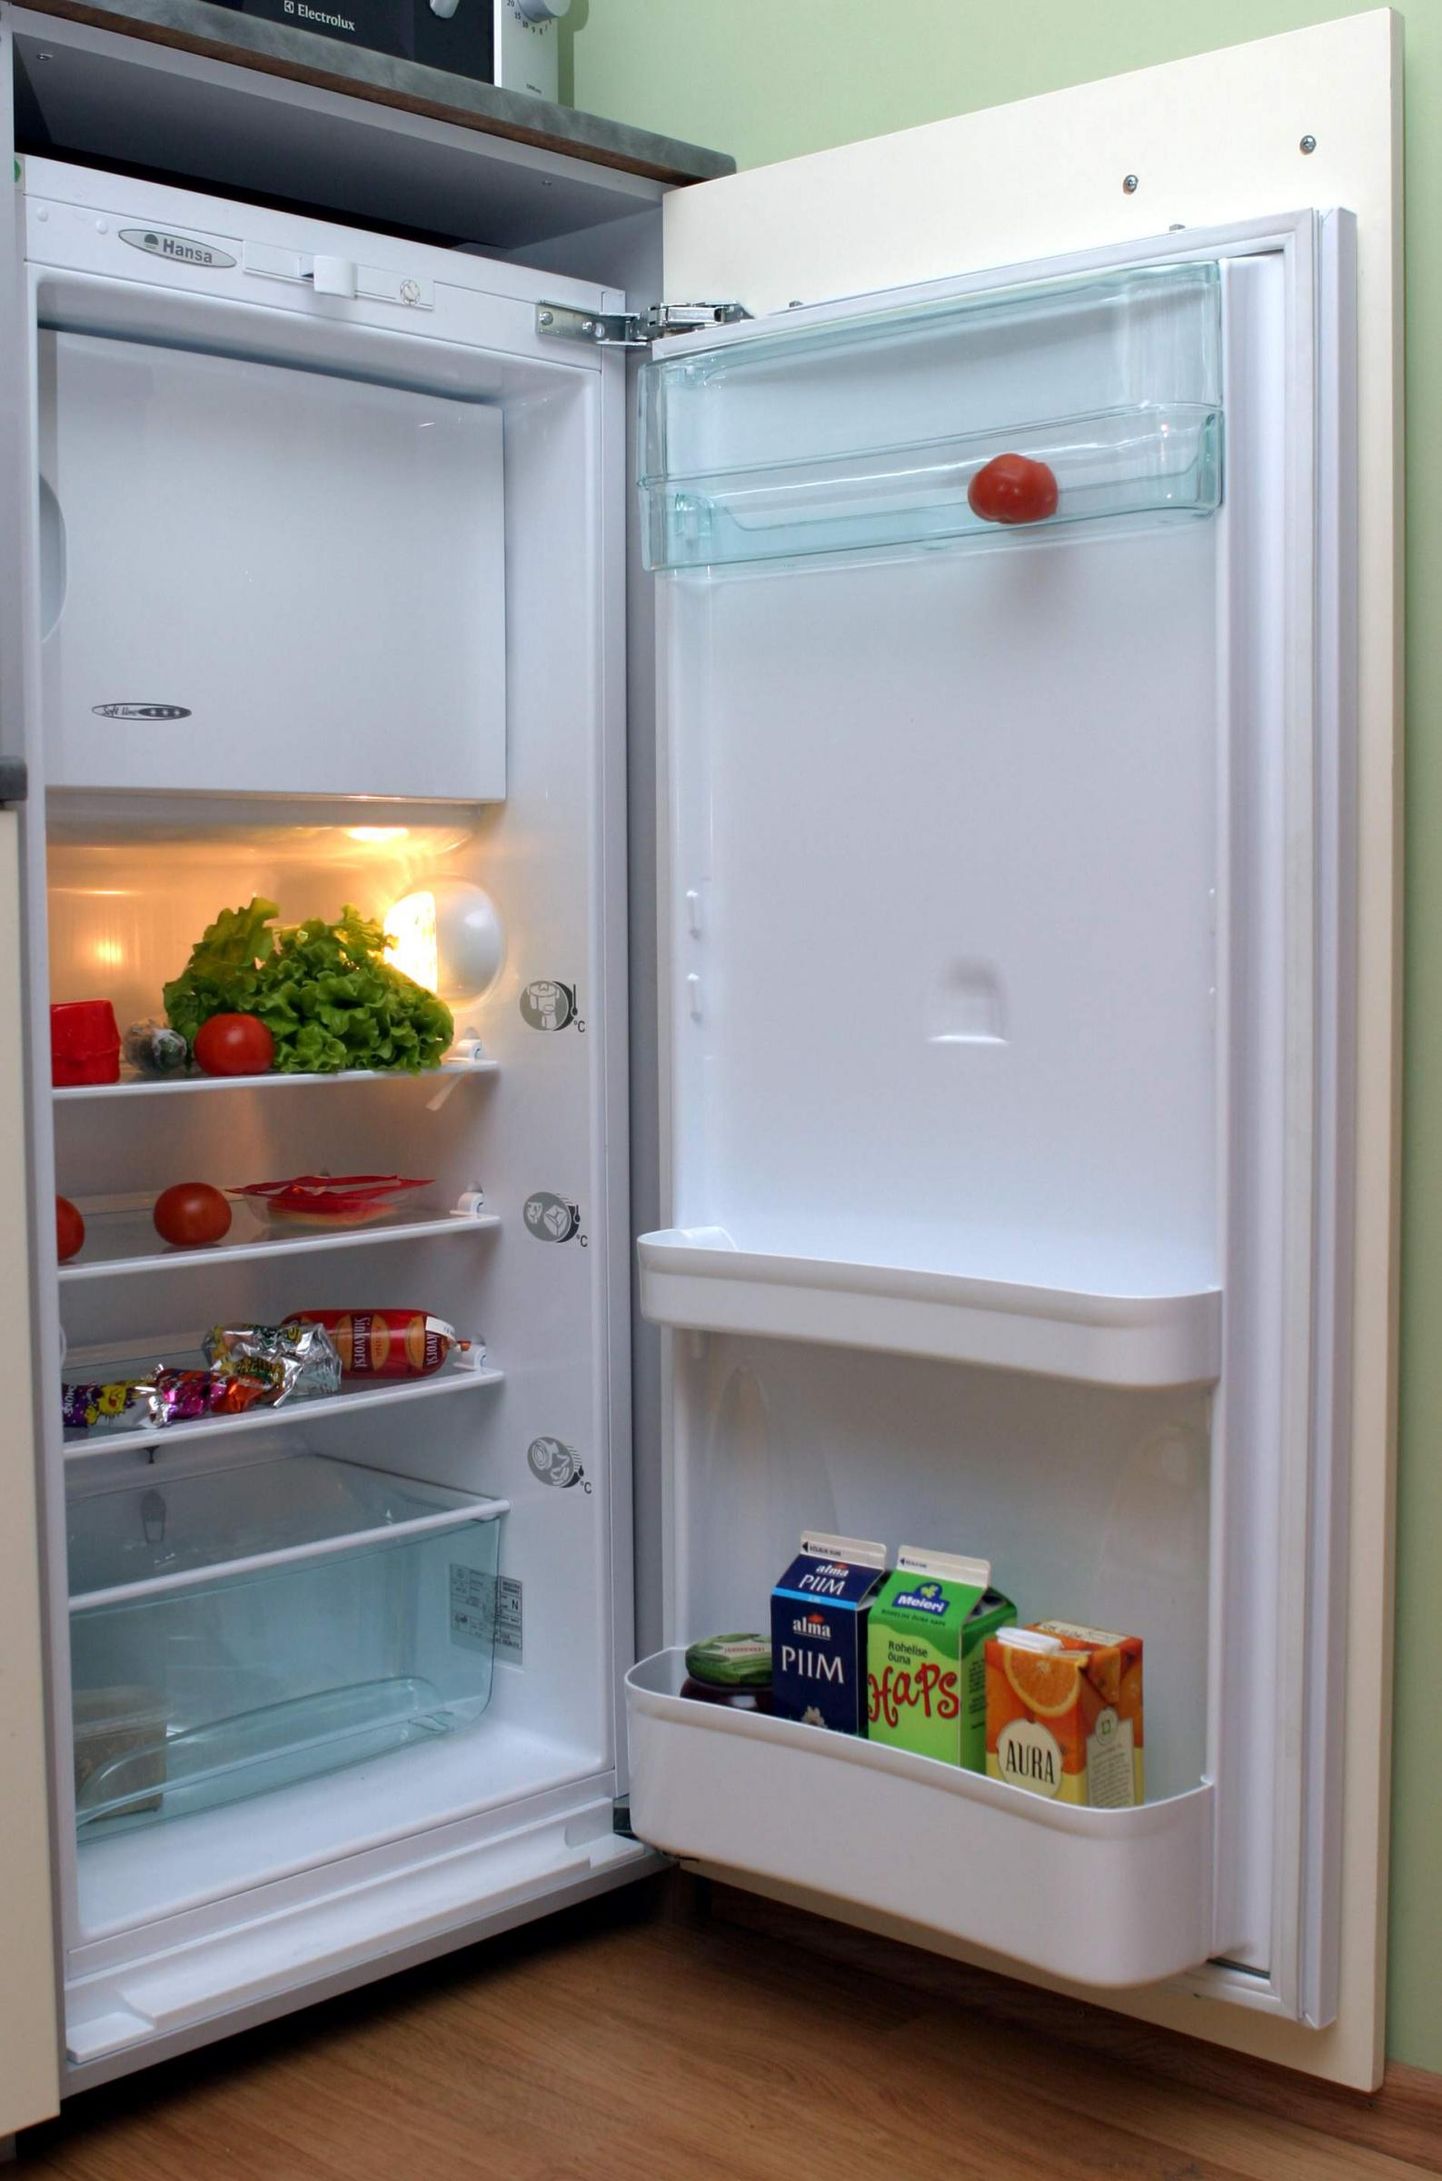 Varguse vältimiseks hoiavad inimesed oma elektroonset autovõtit muu hulgas külmkapis.